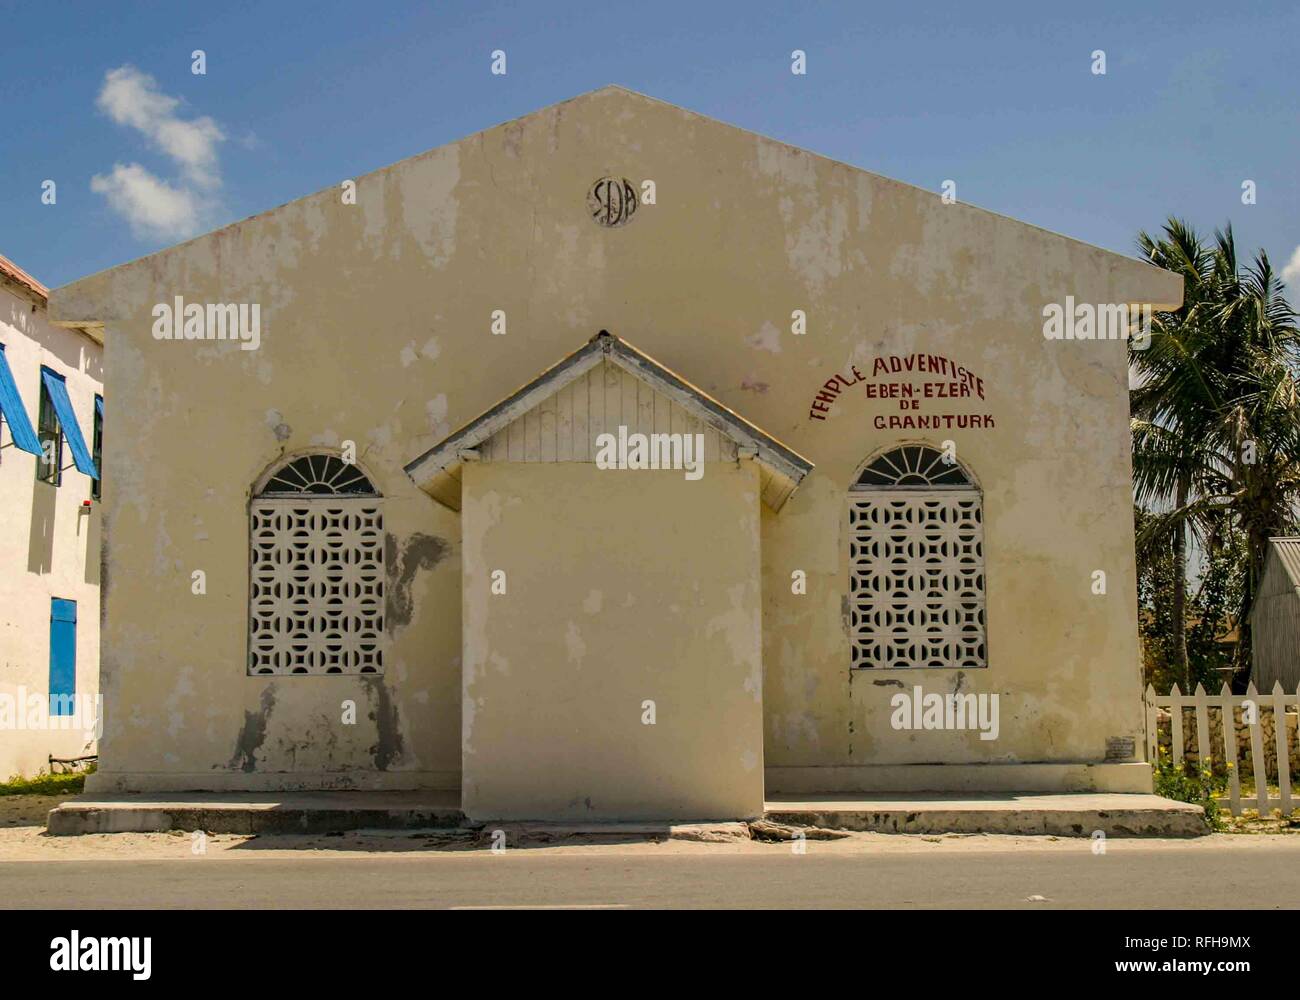 Creolo haitiano immagini e fotografie stock ad alta risoluzione - Alamy